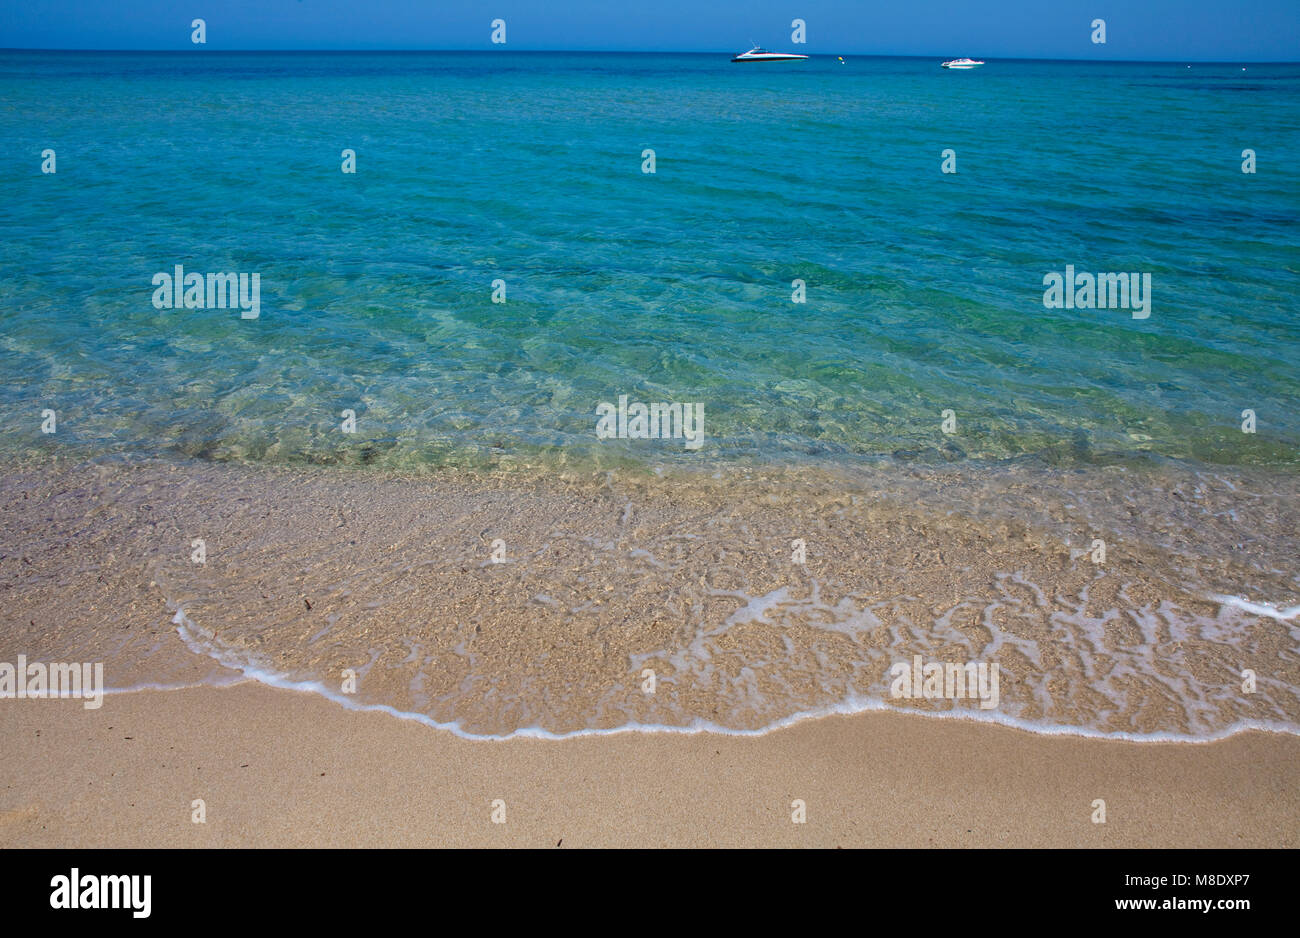 Das kristallklare Wasser am Strand von Pampelonne, beliebten Strand von Saint Tropez, Côte d'Azur, Südfrankreich, Cote d'Azur, Frankreich, Europa, Mittelmeer Stockfoto